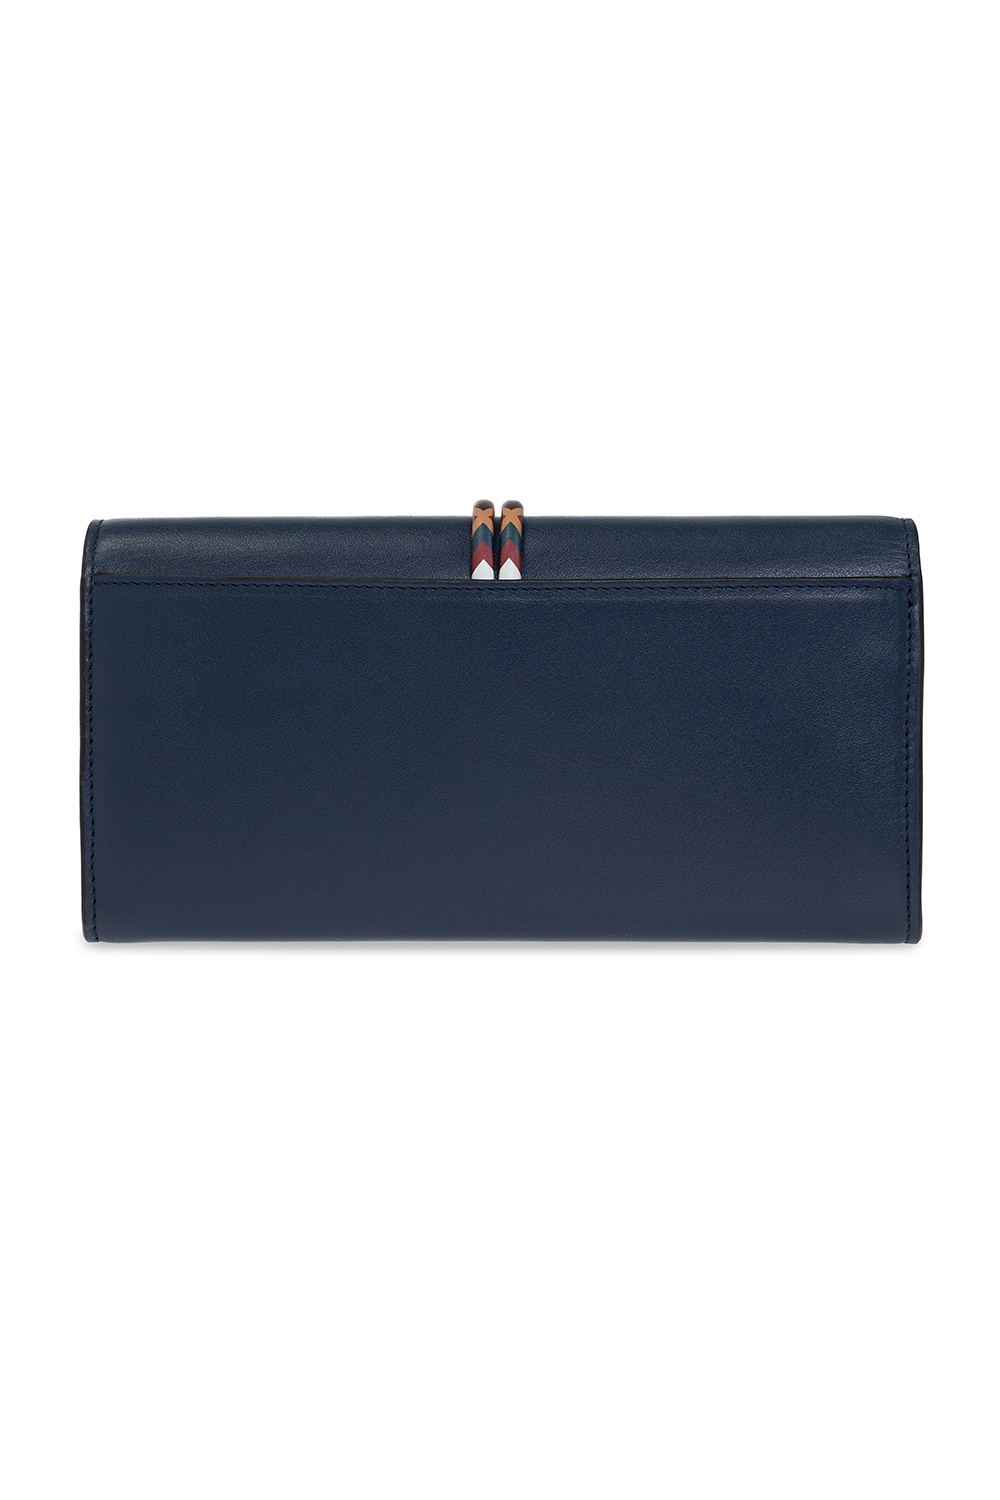 Chloé ‘Alphabet’ wallet